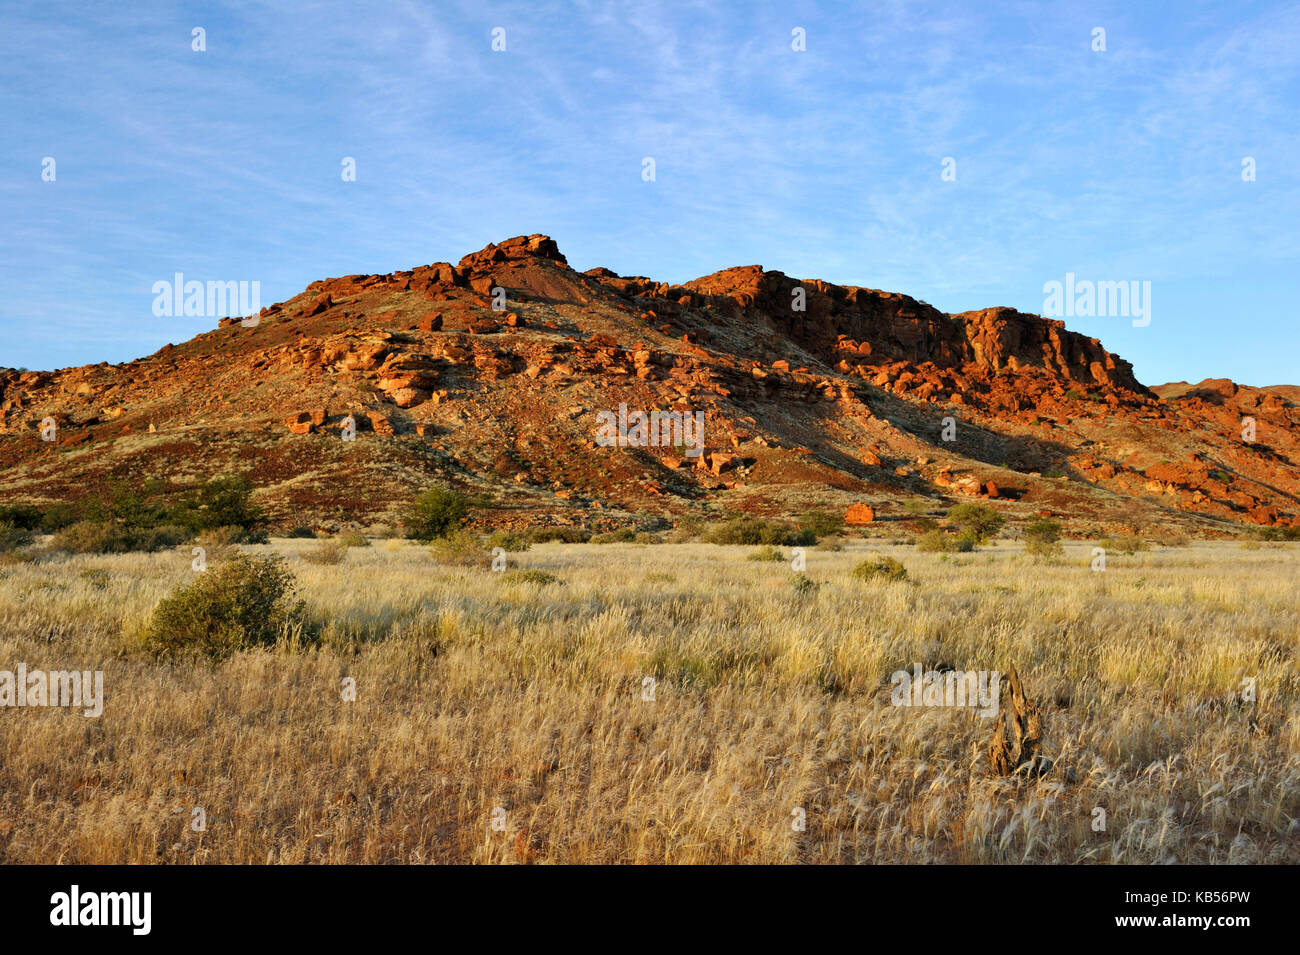 La Namibie, damaraland, twyfeltontein, classé au patrimoine mondial par l'Unesco et des pictogrammes Banque D'Images